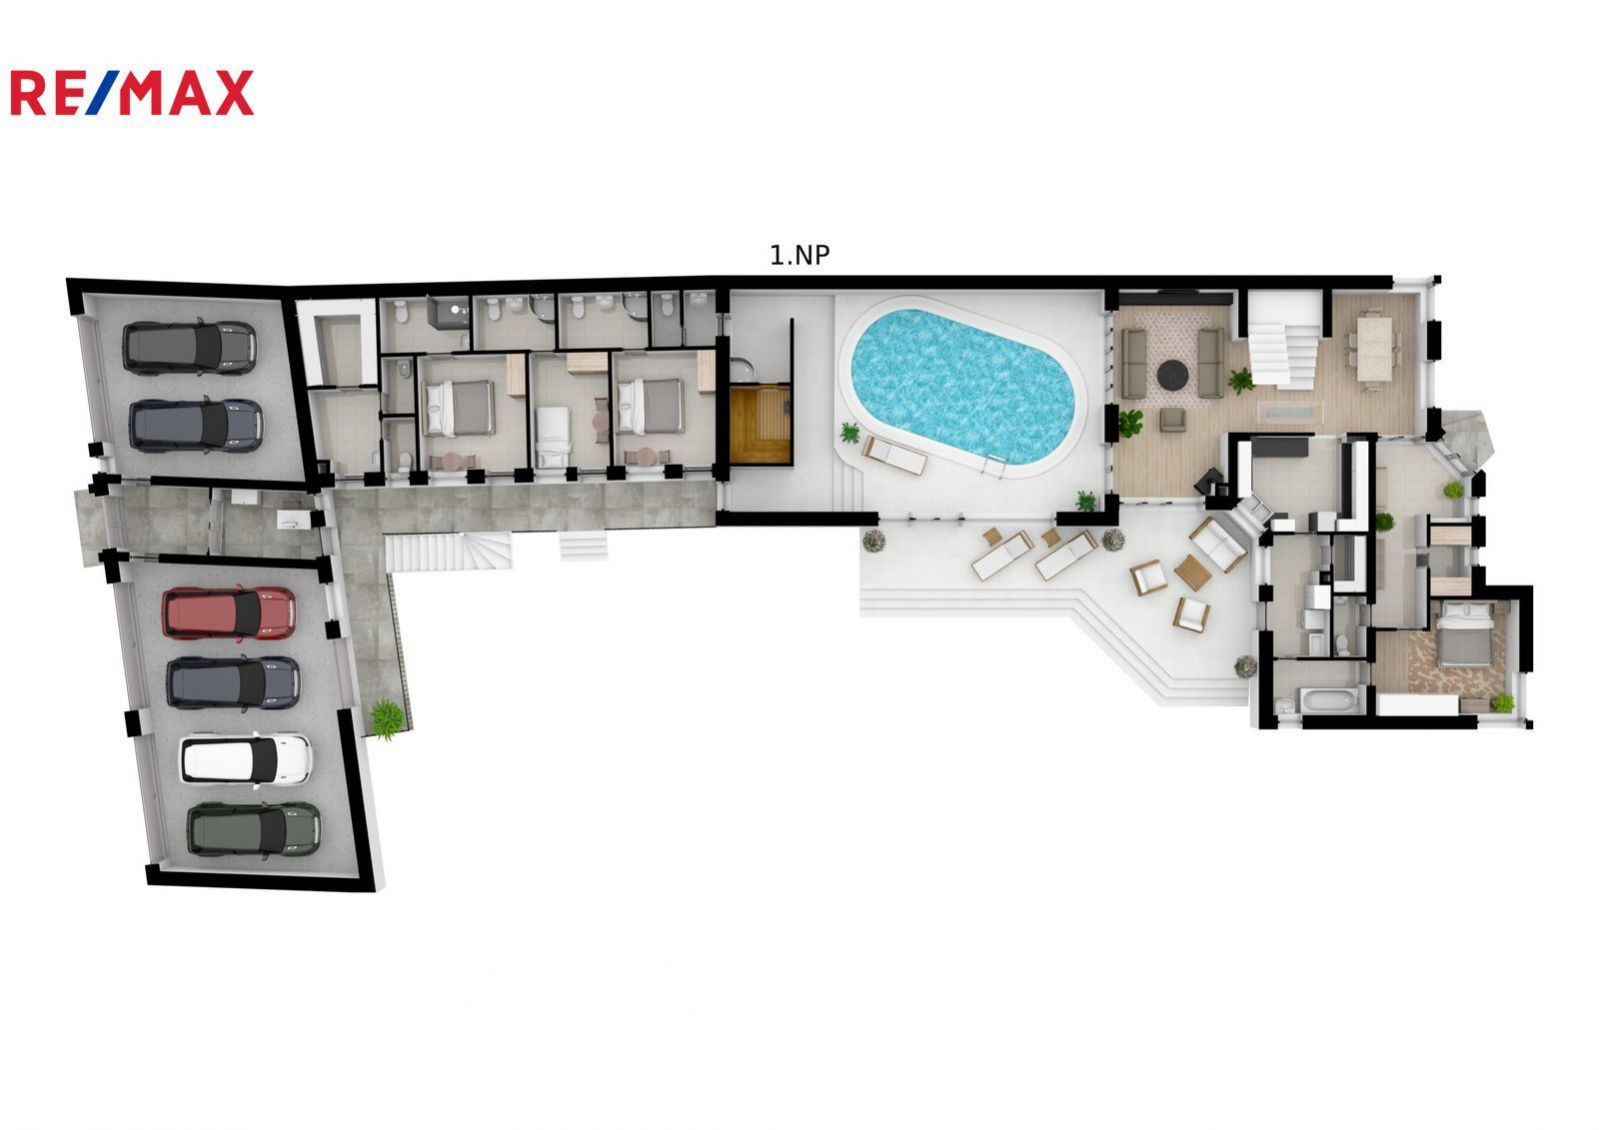 Zavedený penzion, s rodinným domem 4+1 ( UP 325 m2), pizzerií, bazénem, vinným sklepem, Valtice, obrázek č. 3